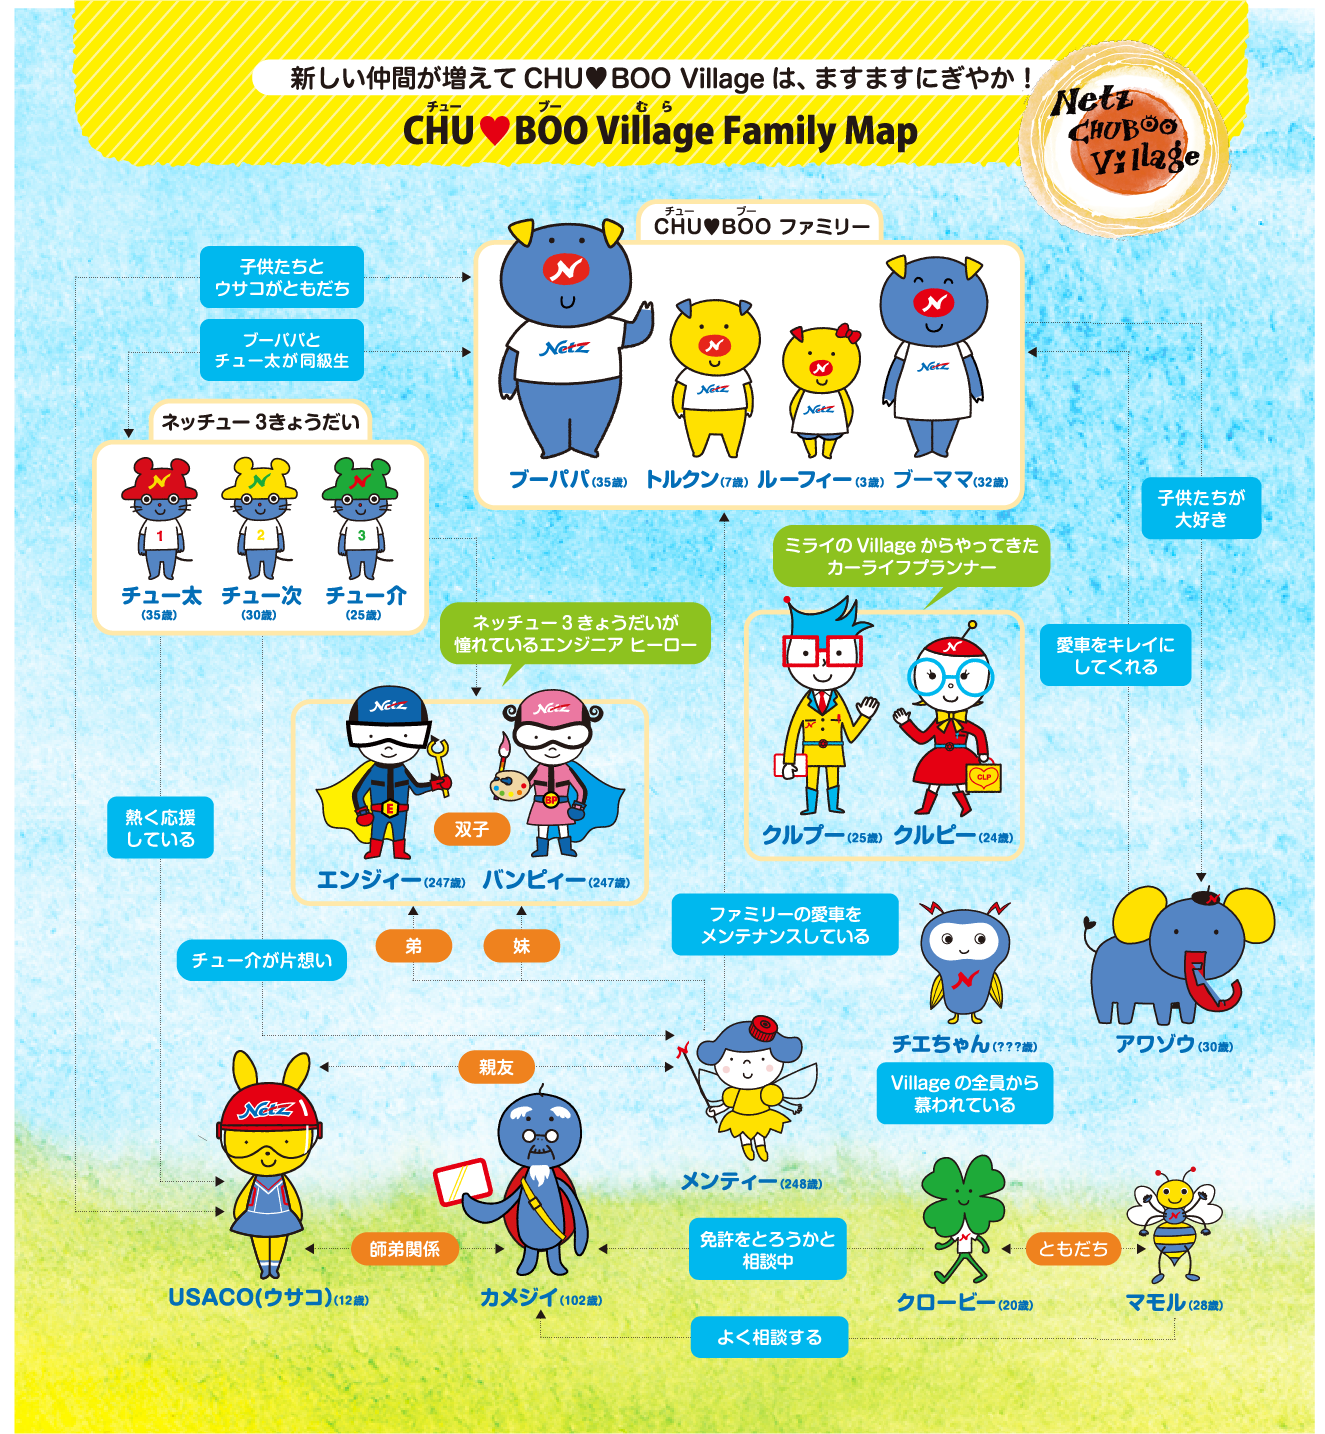 新しい仲間が増えてCHU BOO Villageは、ますますにぎやか！ CHU BOO Village Family Map